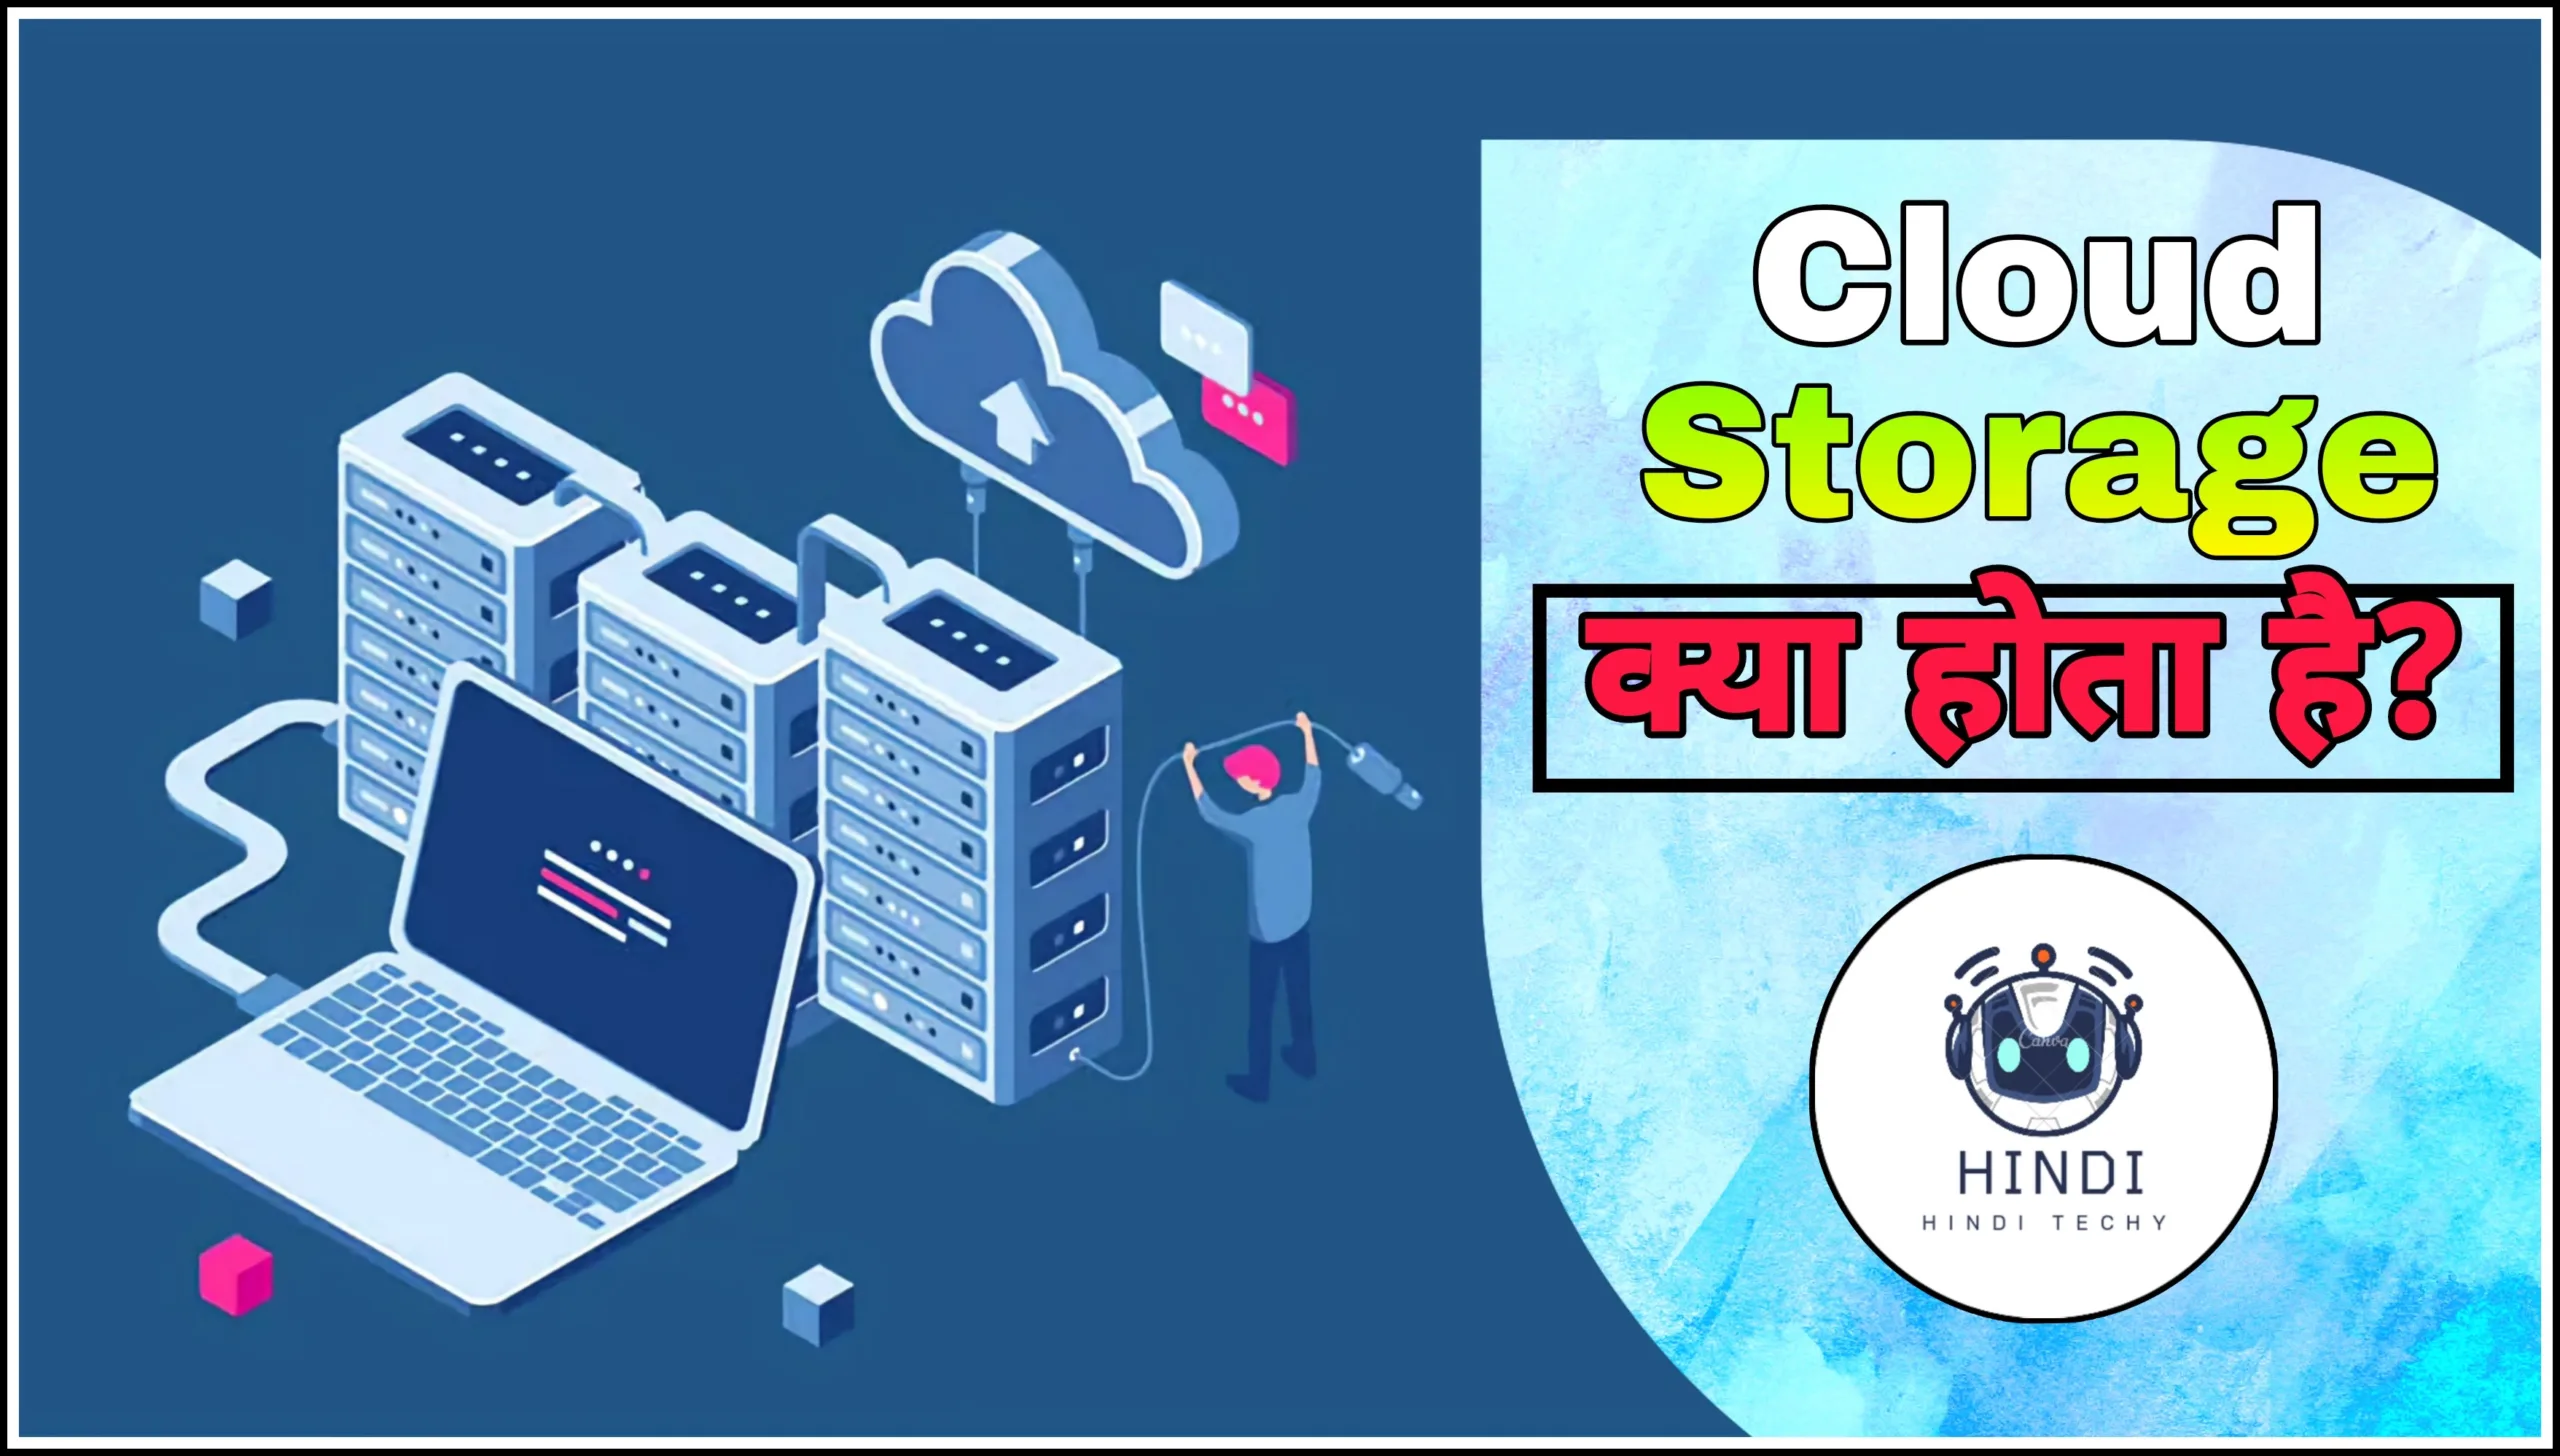 क्लाउड स्टोरेज क्या है ? Cloud Storage in Hindi